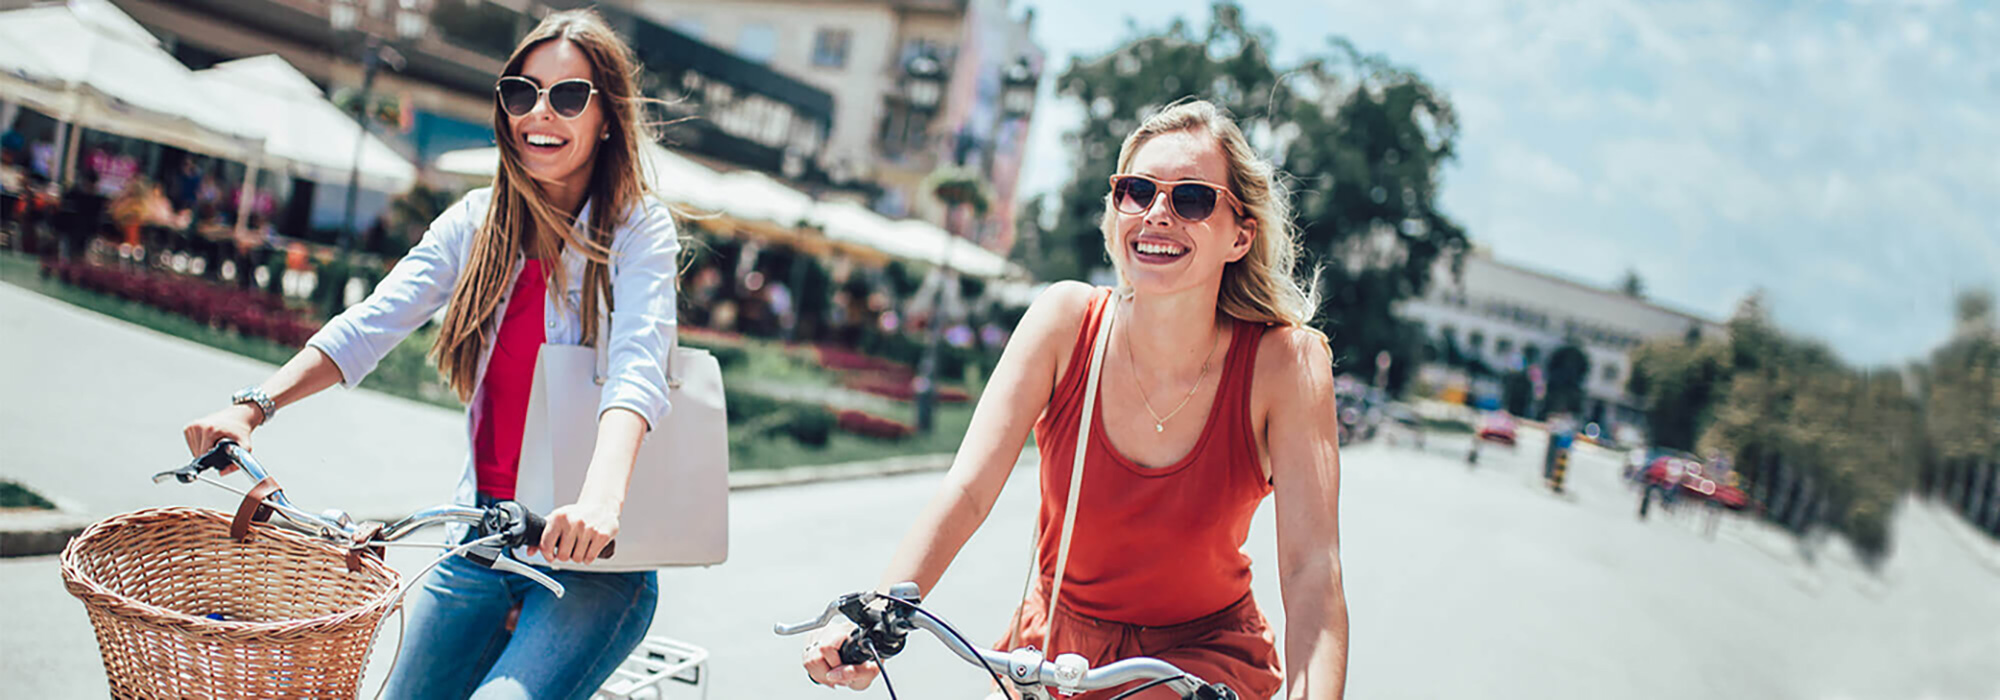 Zwei Damen auf einen Fahrrad sind auf der Straße zum Einkaufen unterwegs.